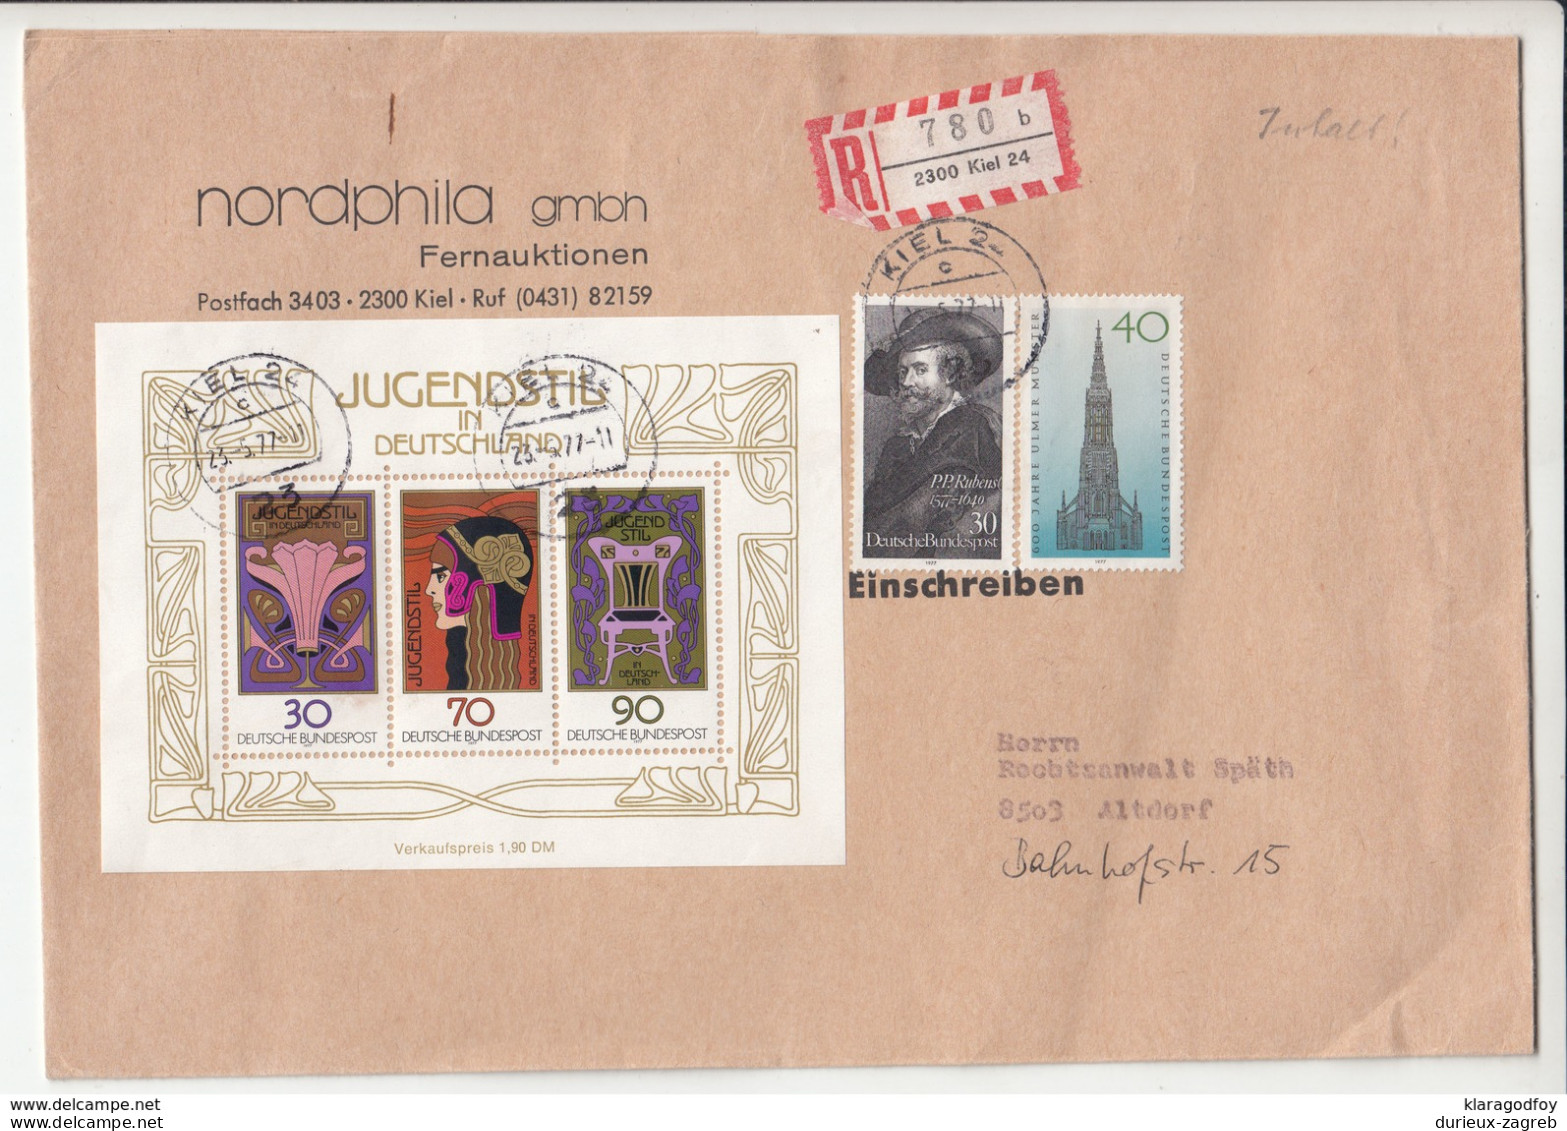 Germany, Jugendstil Souvernir Sheet On Nordhphila Letter Cover Registered Travelled 1977 Kiel Pmk B190101 - Covers & Documents